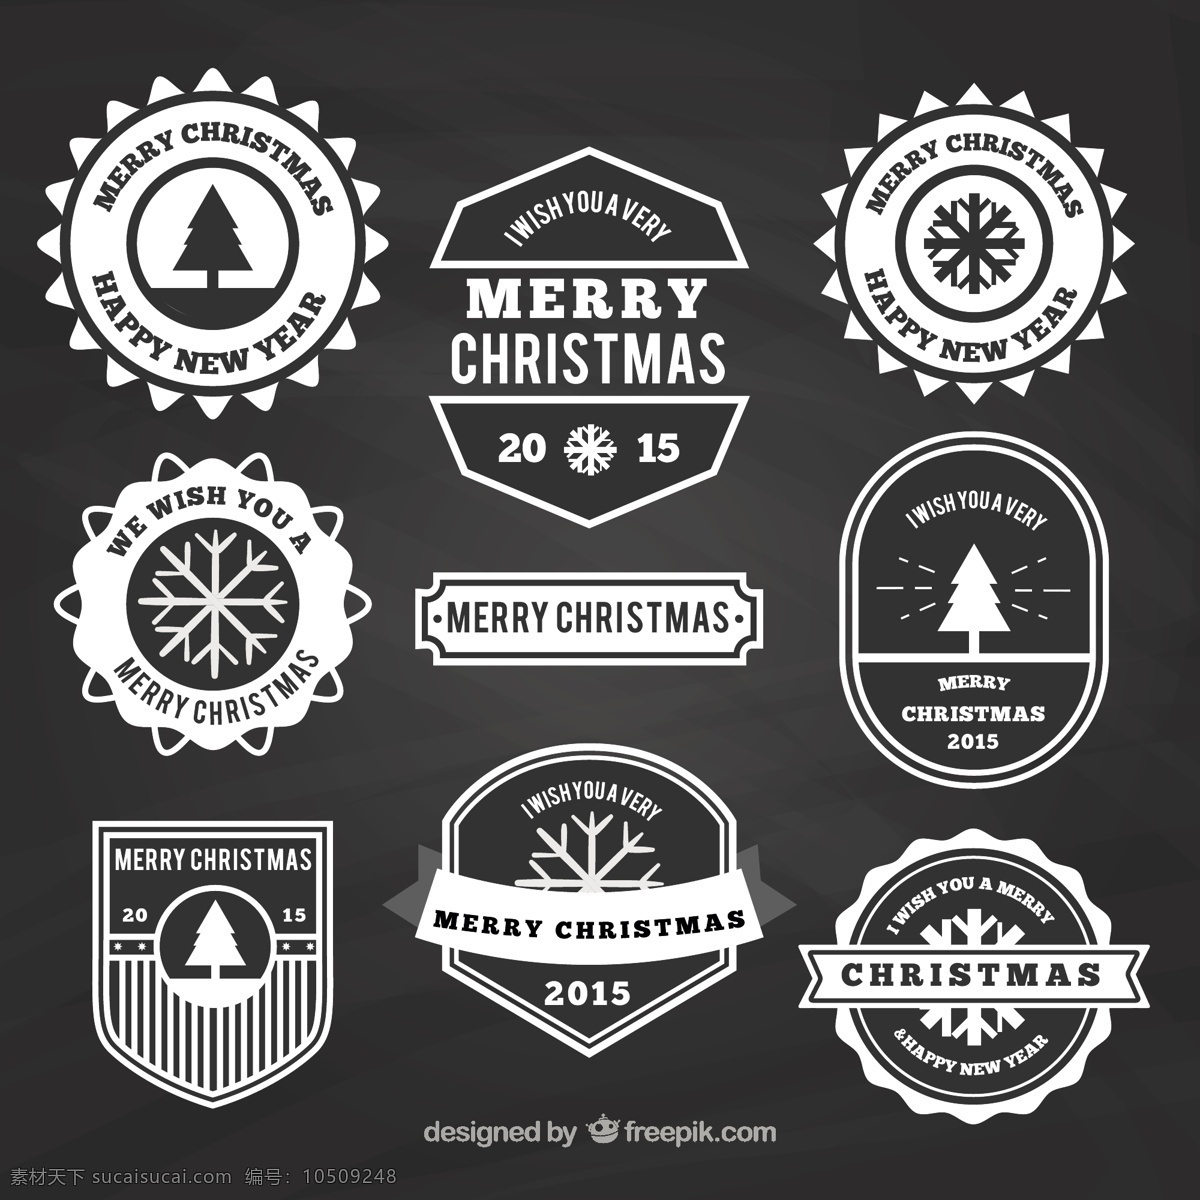 圣诞节 黑板 上 各种 徽章 圣诞快乐 冬天快乐 圣诞 庆祝 节日 节日快乐 季节 快乐 十二月 徽记 品种 灰色